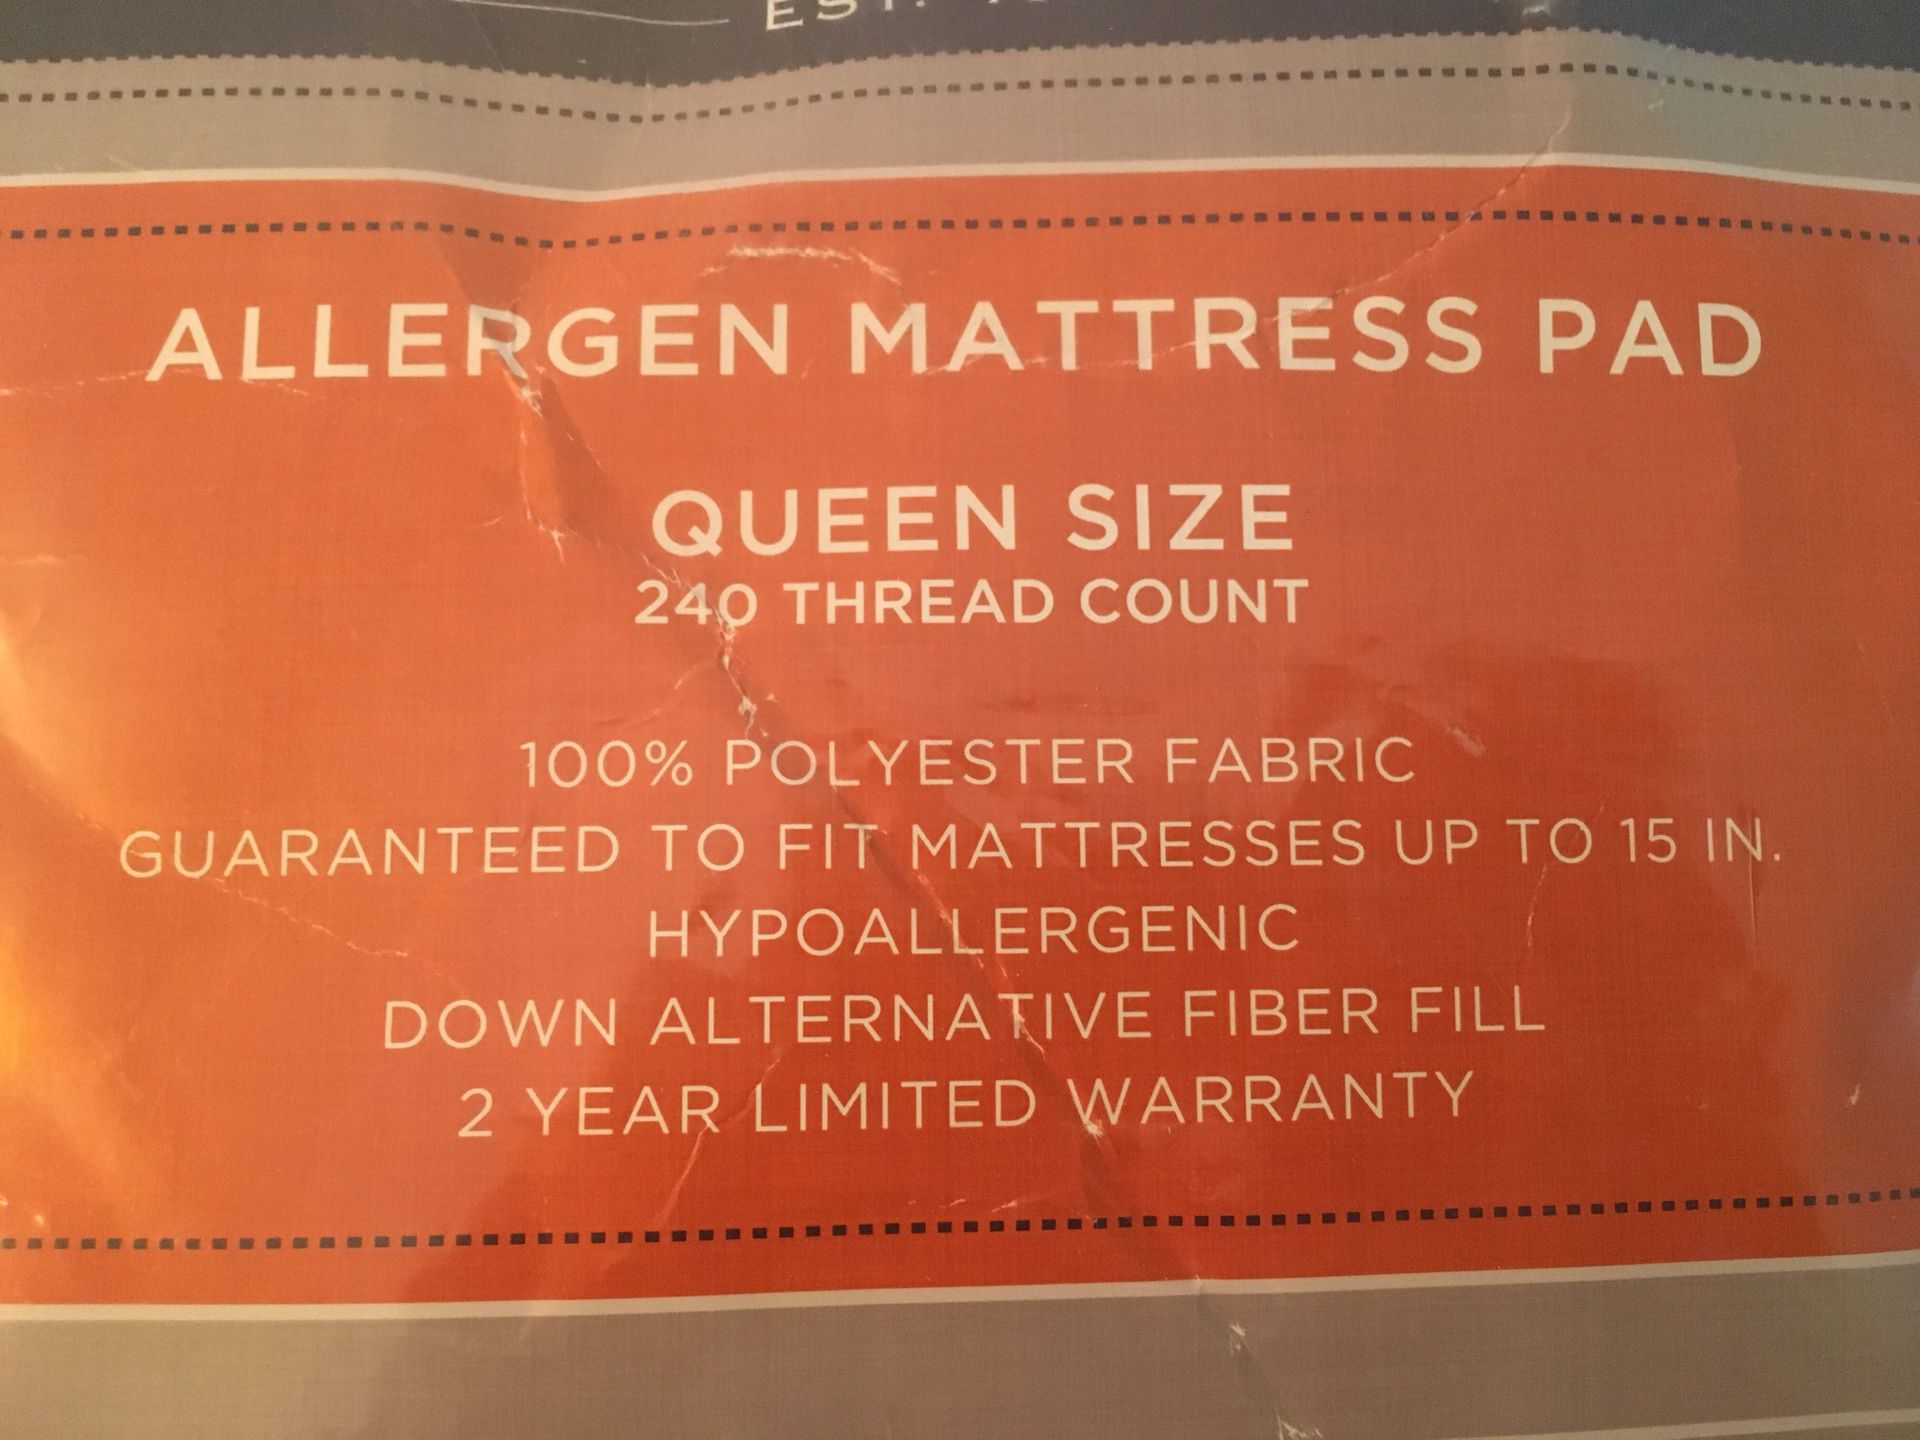 Cannon Allergen Mattress Pad (Queen Size)